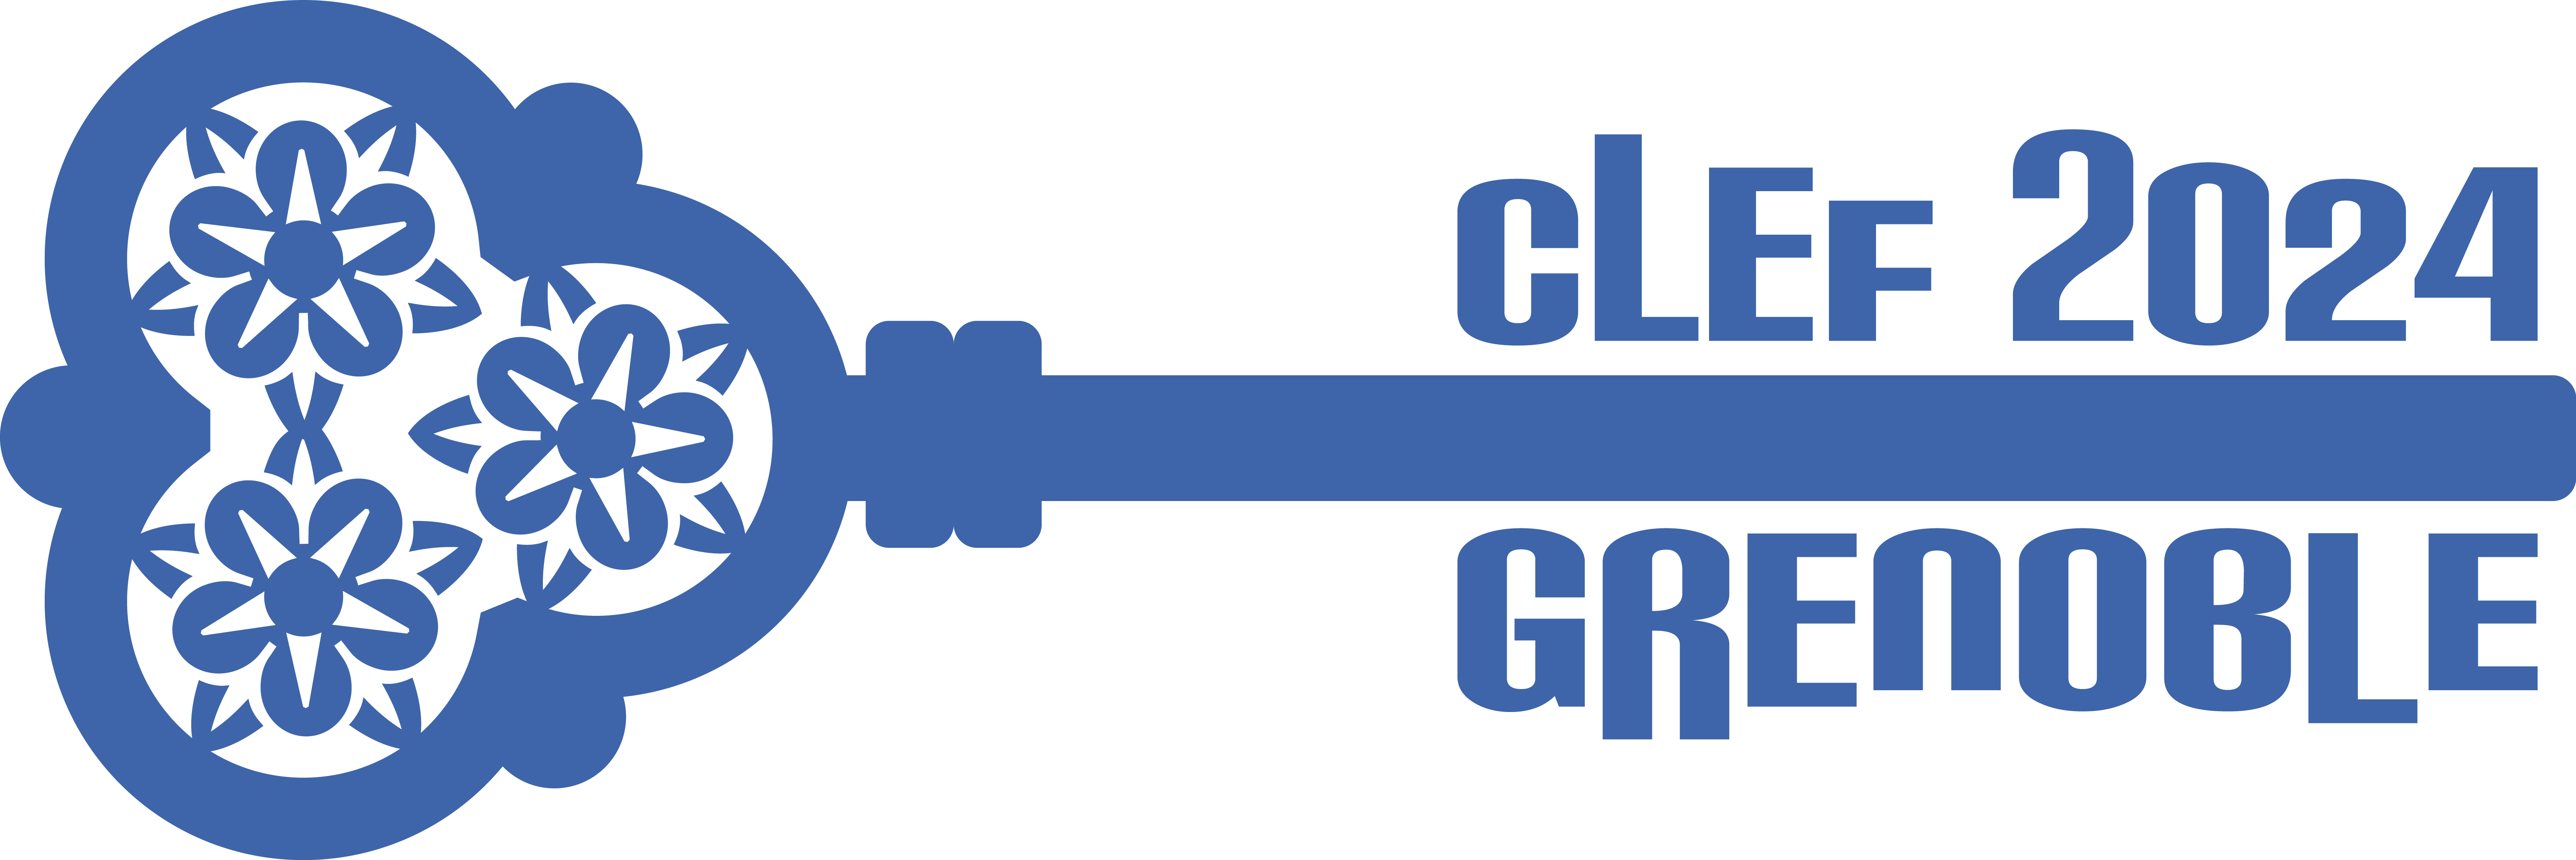 CLEF 2024 Logo